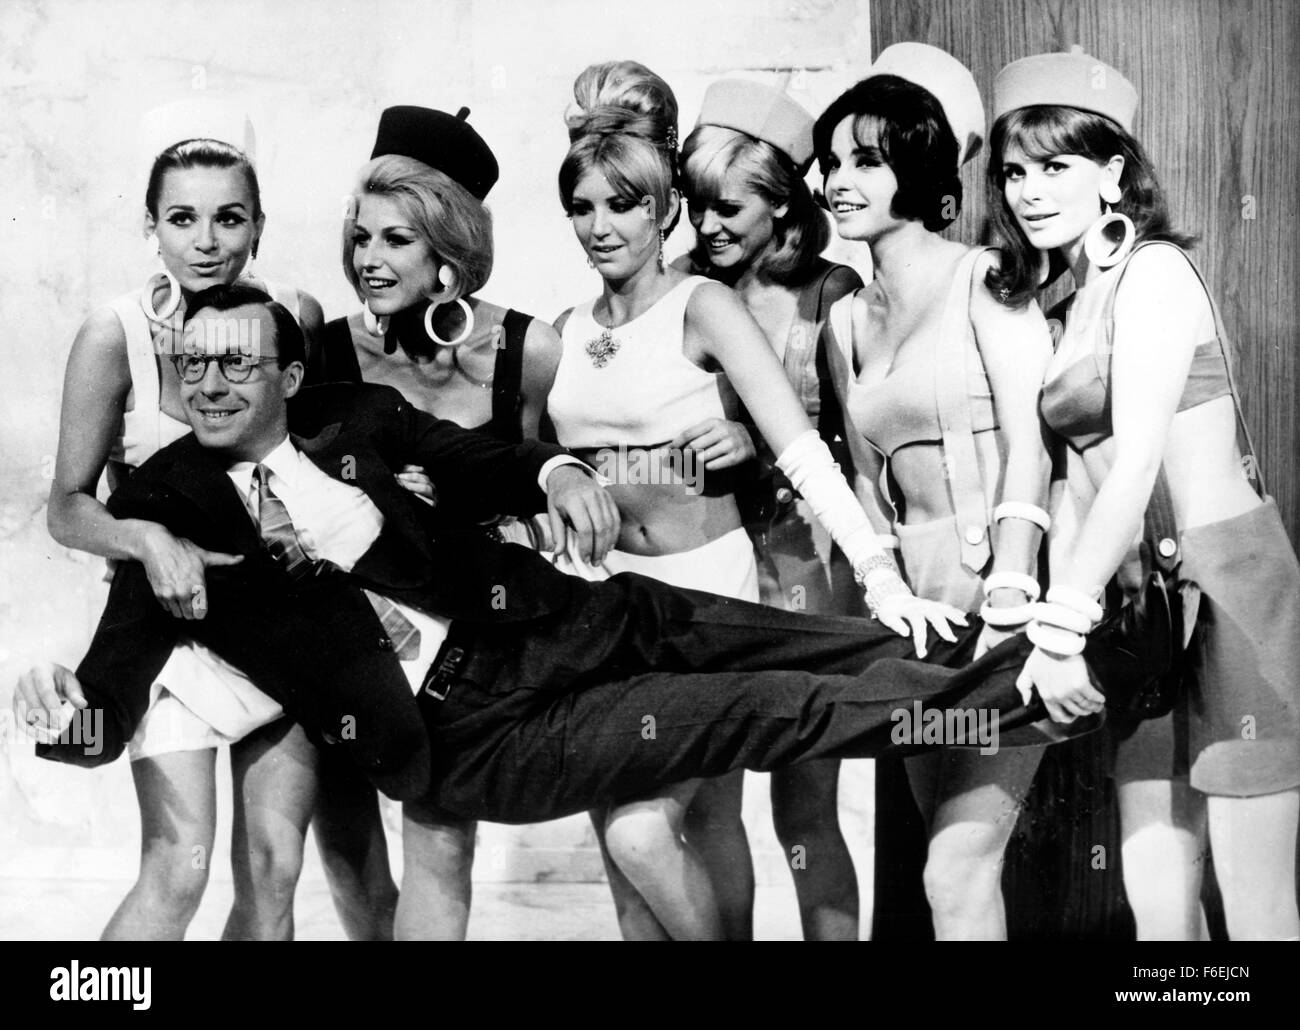 Agosto 1, 1966 - Viena, Austria - El actor austriaco Peter Alexander llevada a cabo por un grupo de mujeres en una escena de la película "Cómo seducir a un playboy," en Austria. (Crédito de la imagen: c KEYSTONE Fotos EE.UU.) Foto de stock